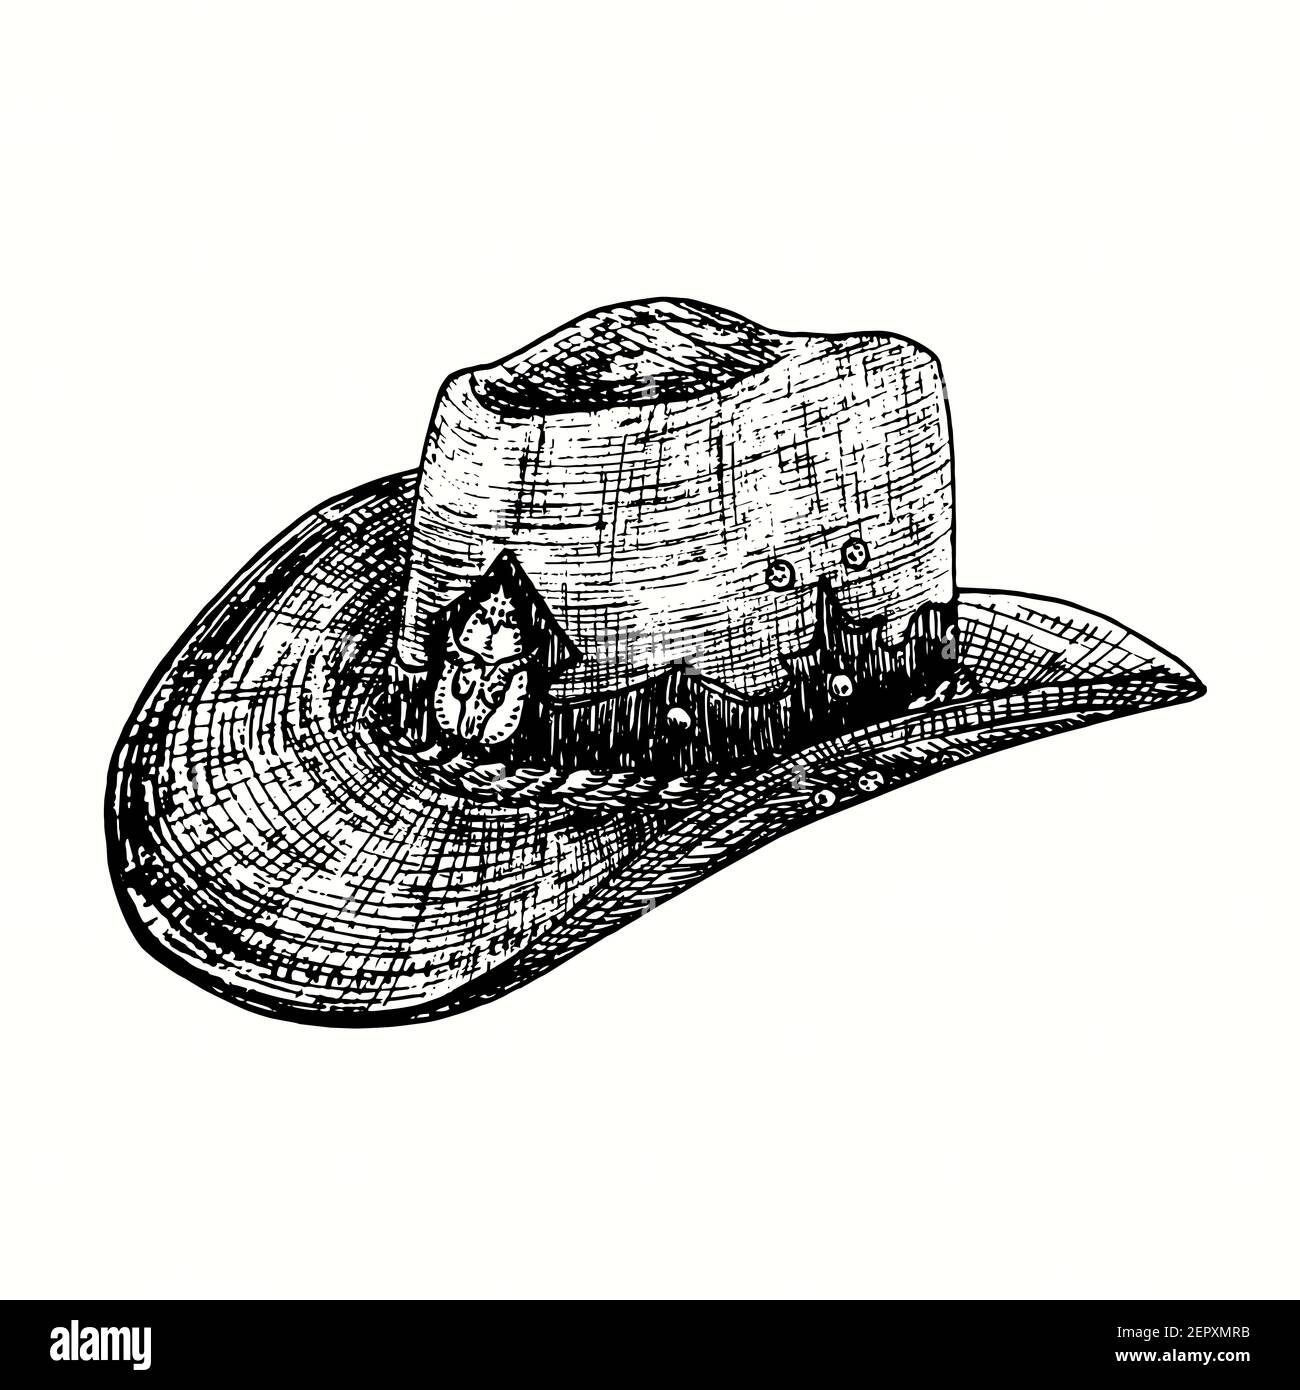 Chapeau de cow-boy vintage dessiné à la main avec crâne de taureau. Illustration de dessin noir et blanc Banque D'Images